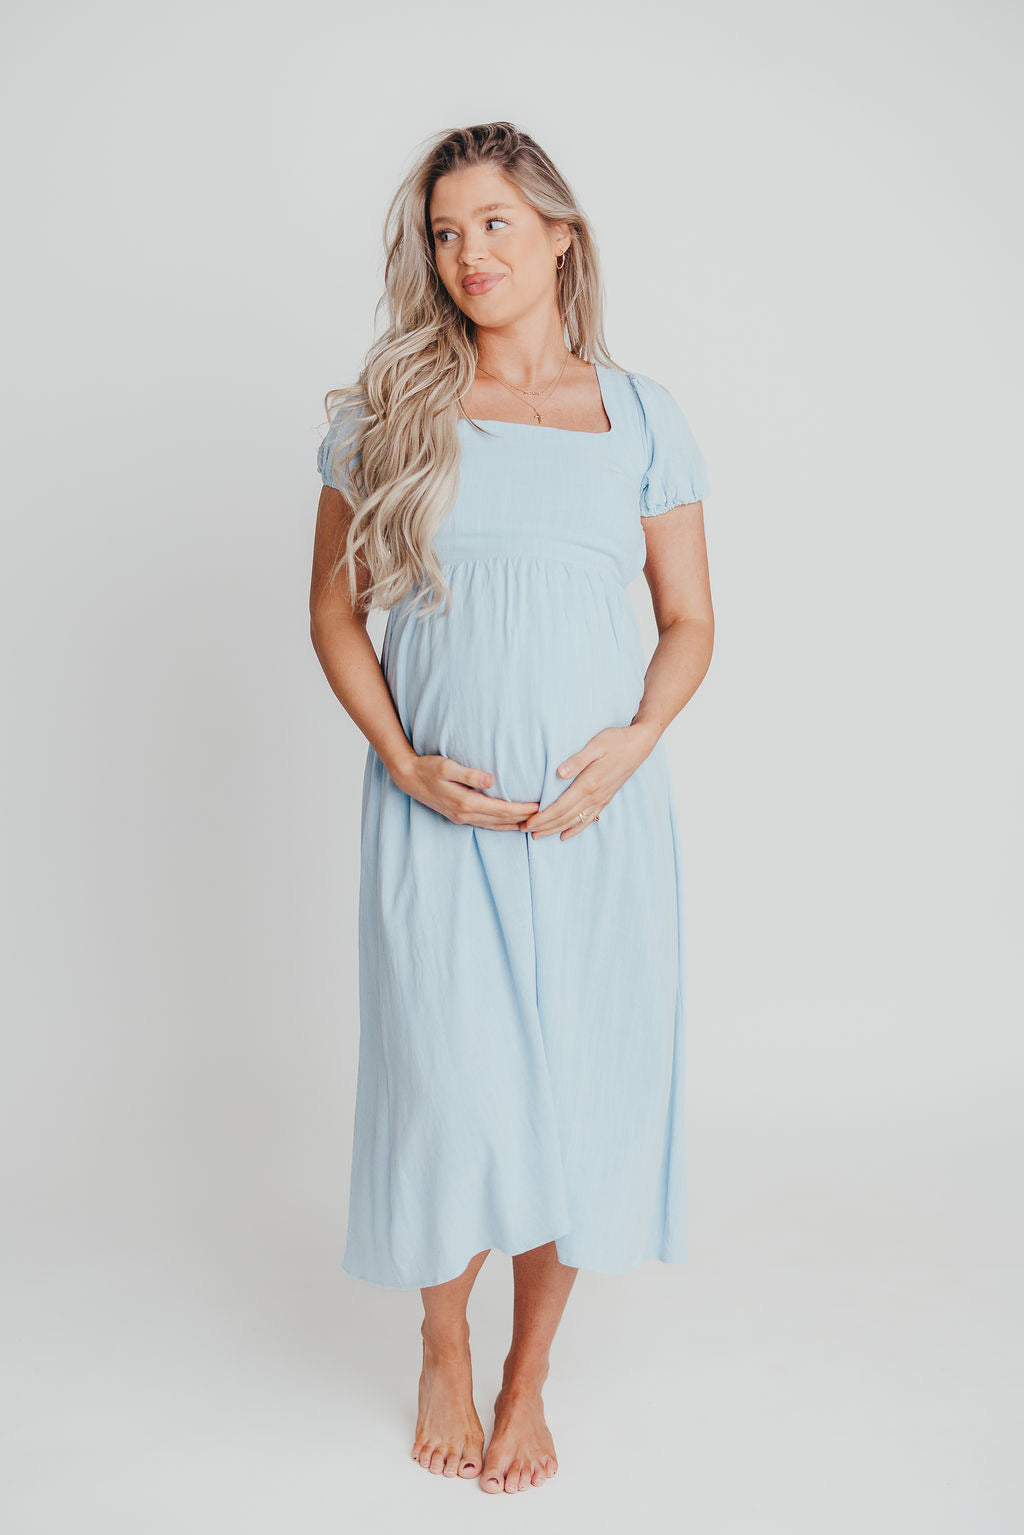 August Open Back Midi Dress in Baby Blue - Bump Friendly